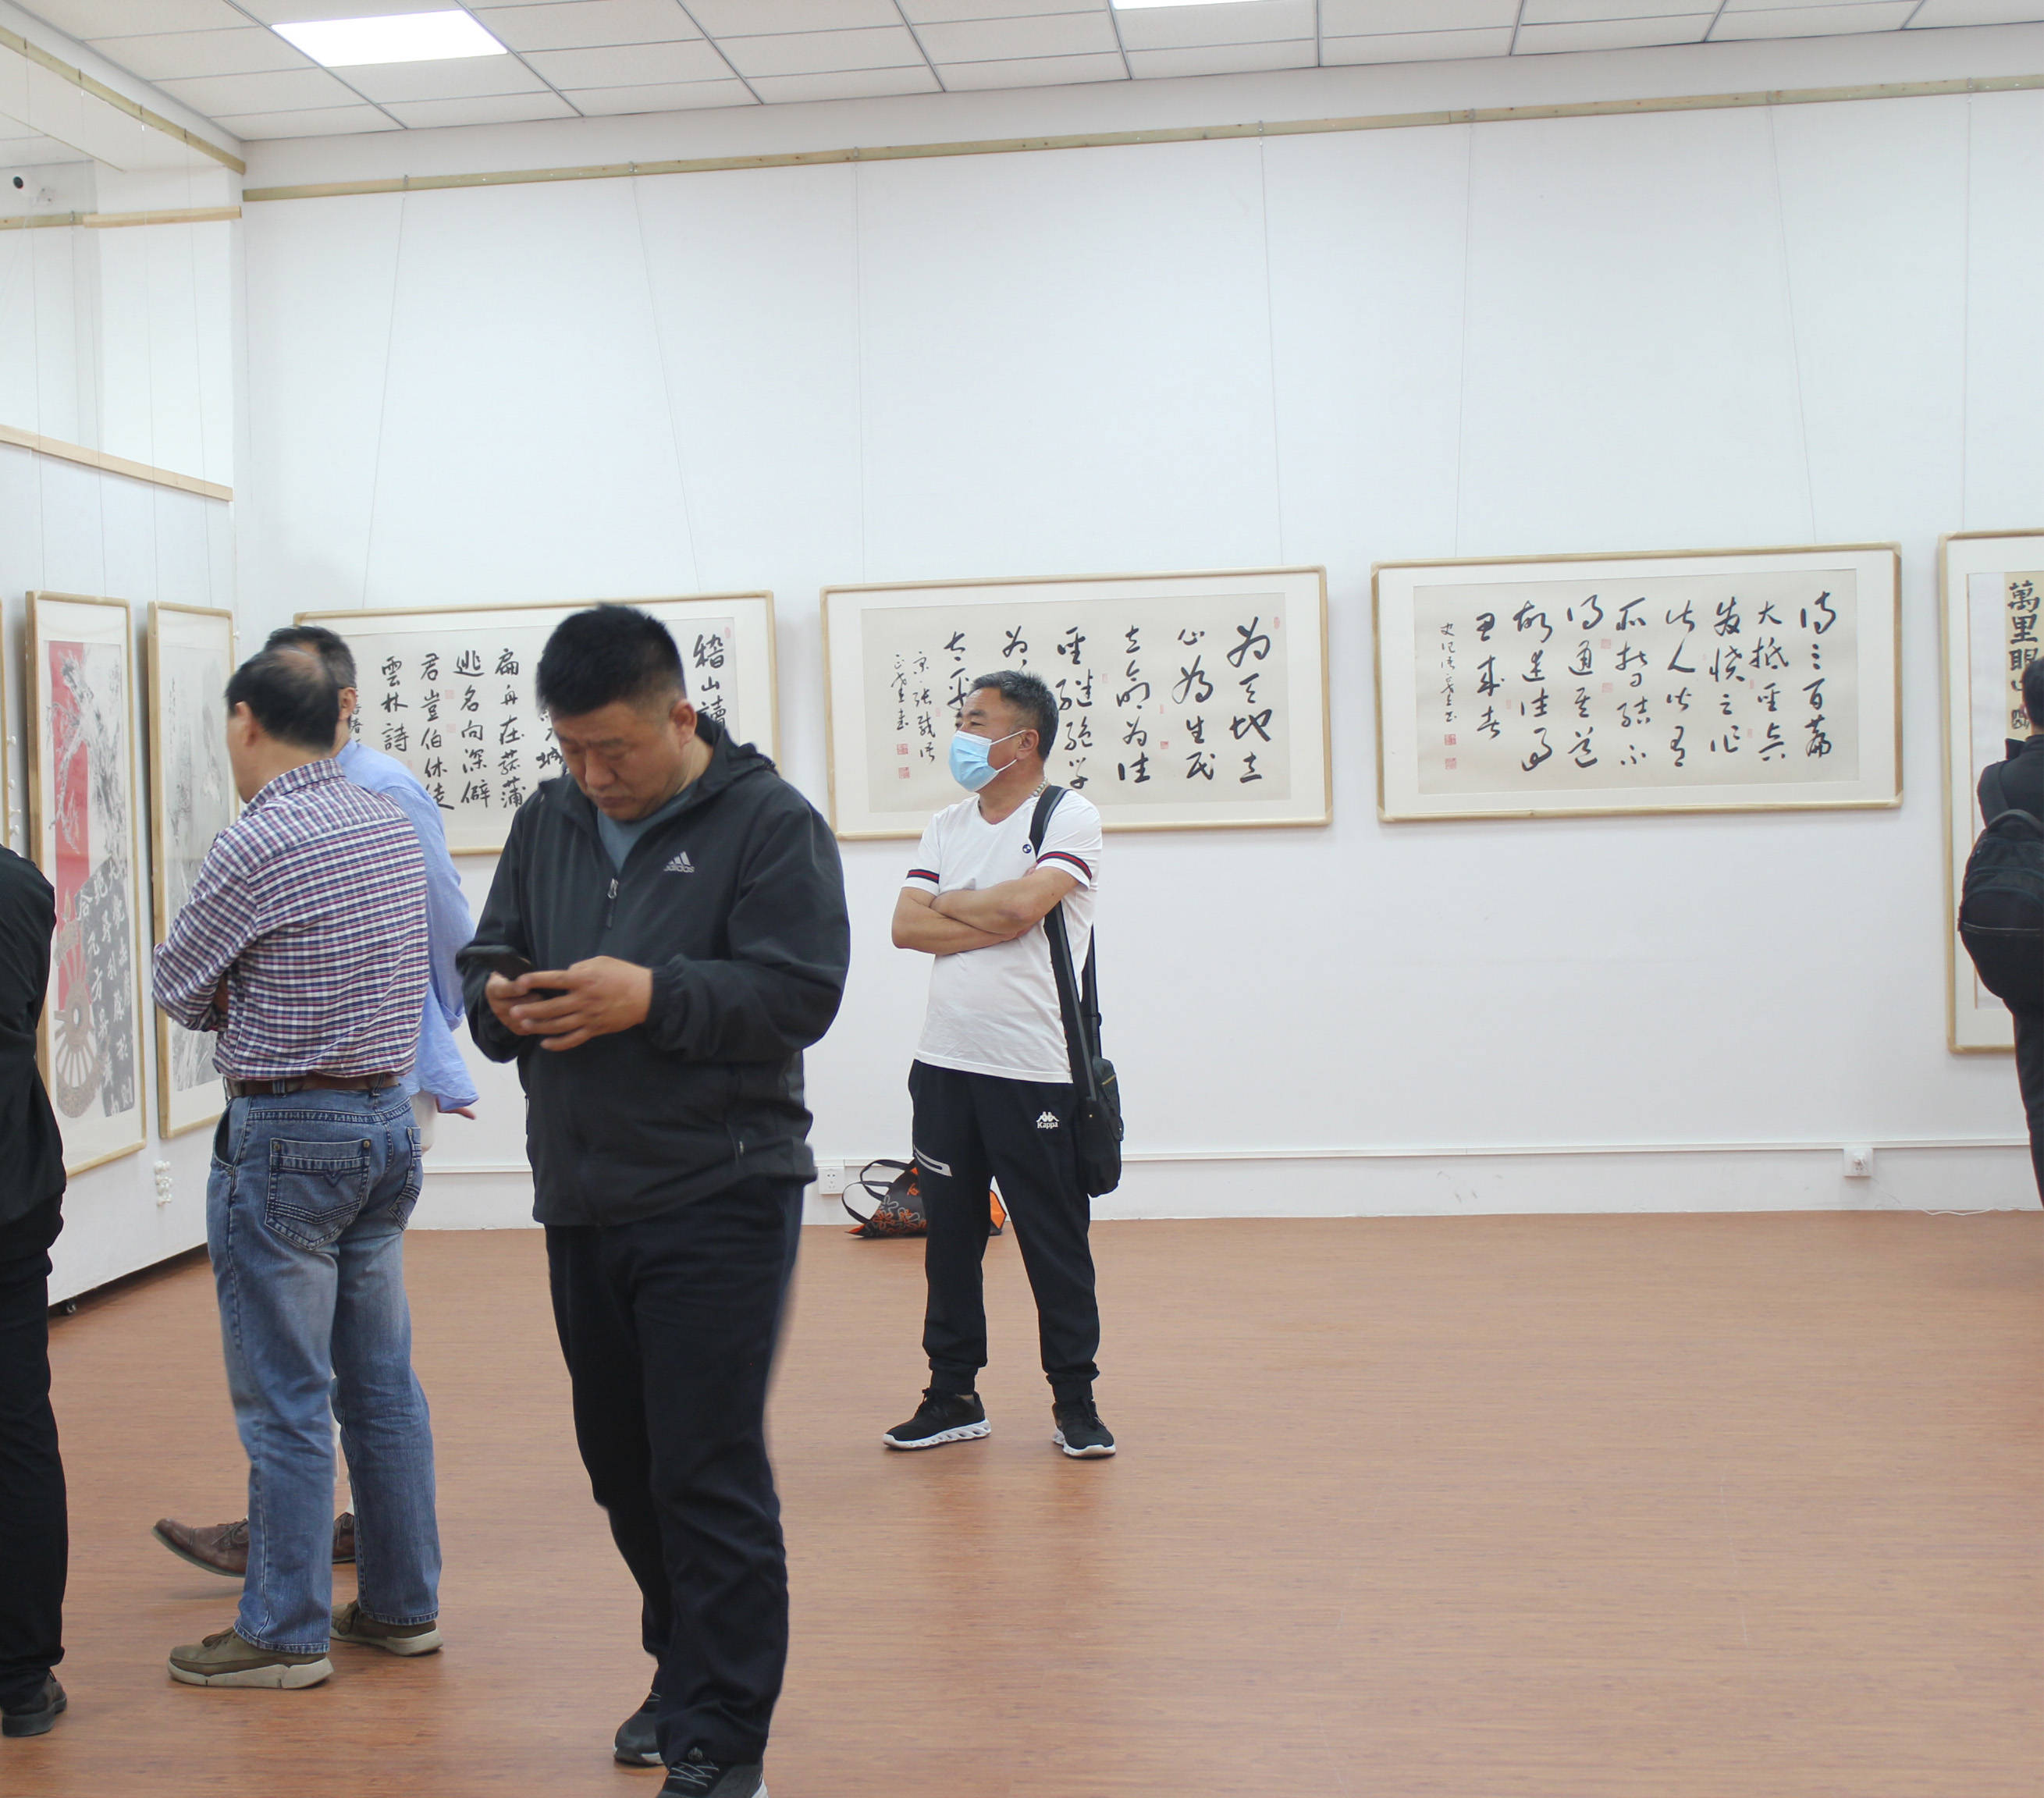 意古发幽墨林七贤书画展在北京东方大画家美术馆开幕